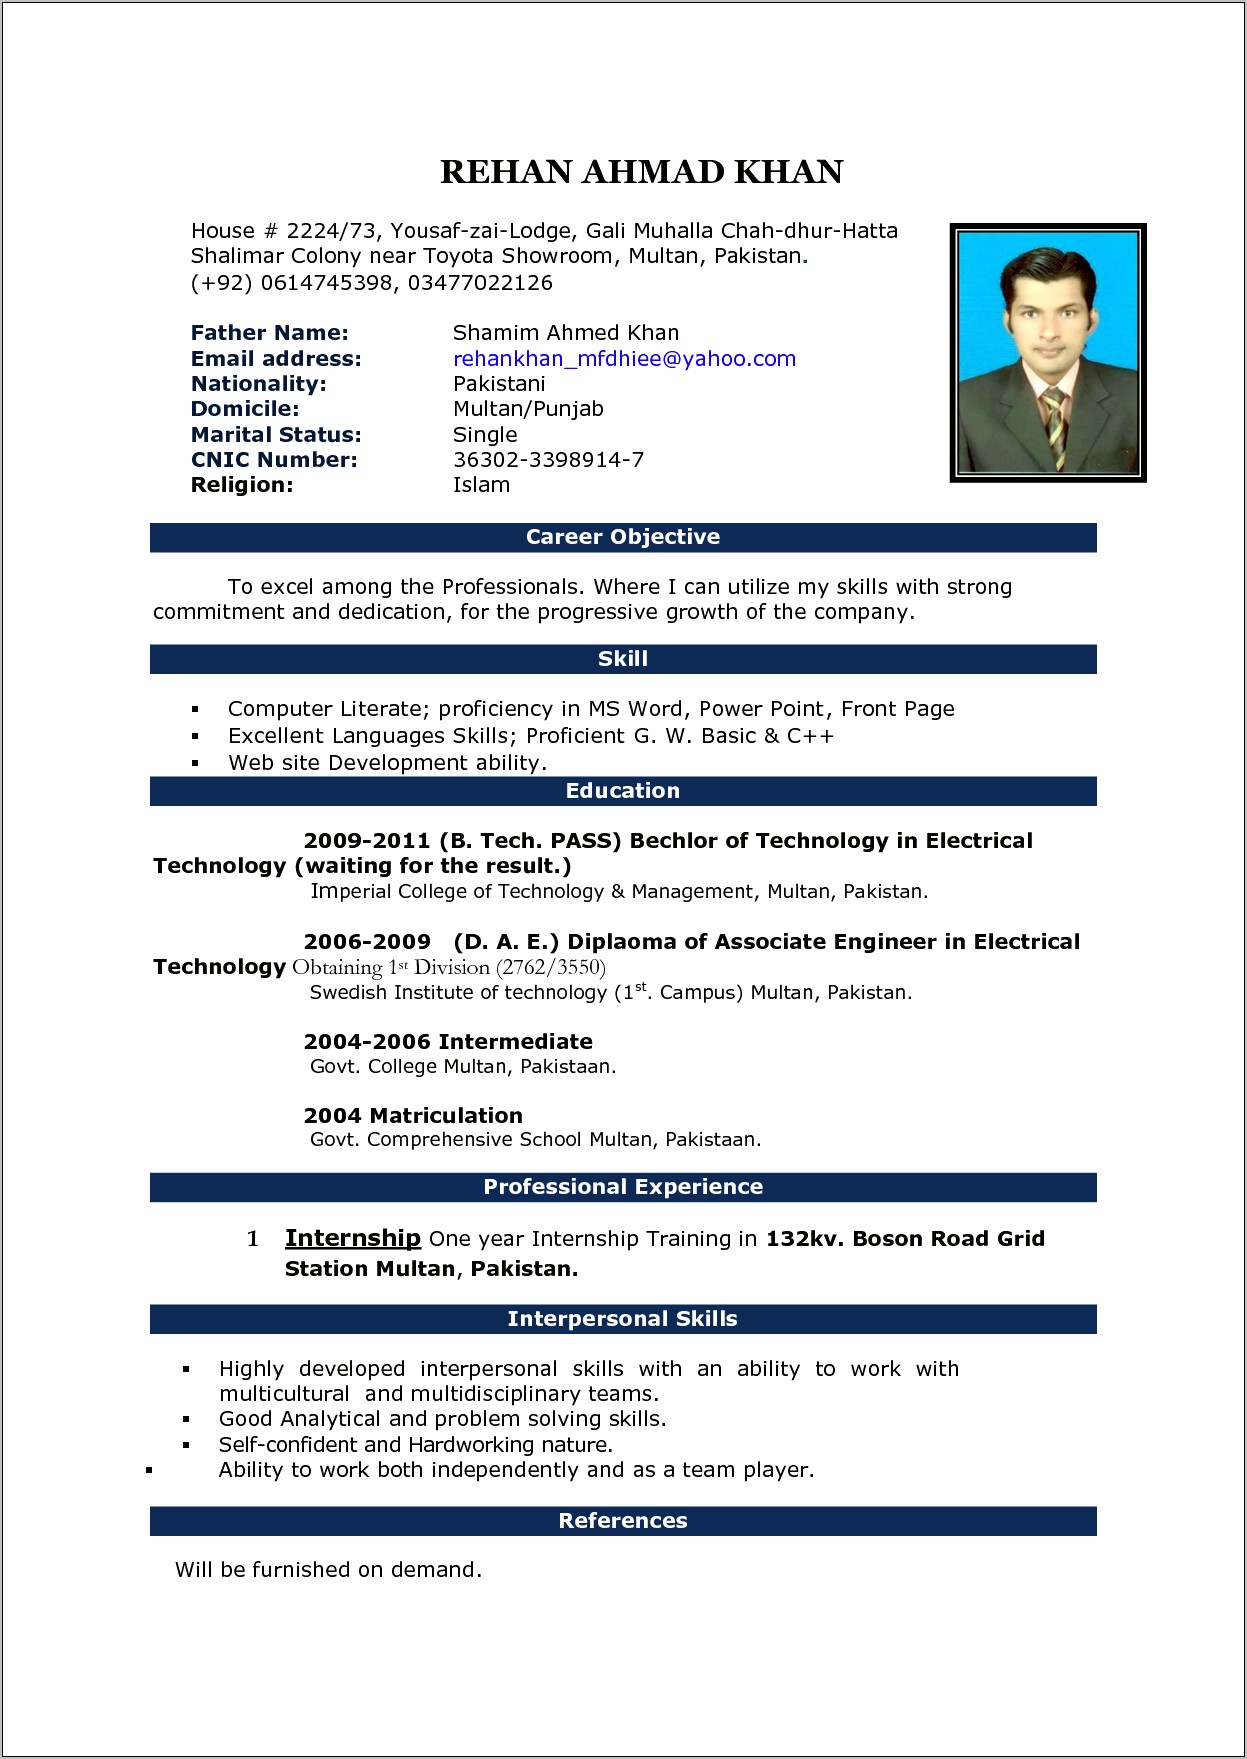 Sample Resume In Ms Word 2007